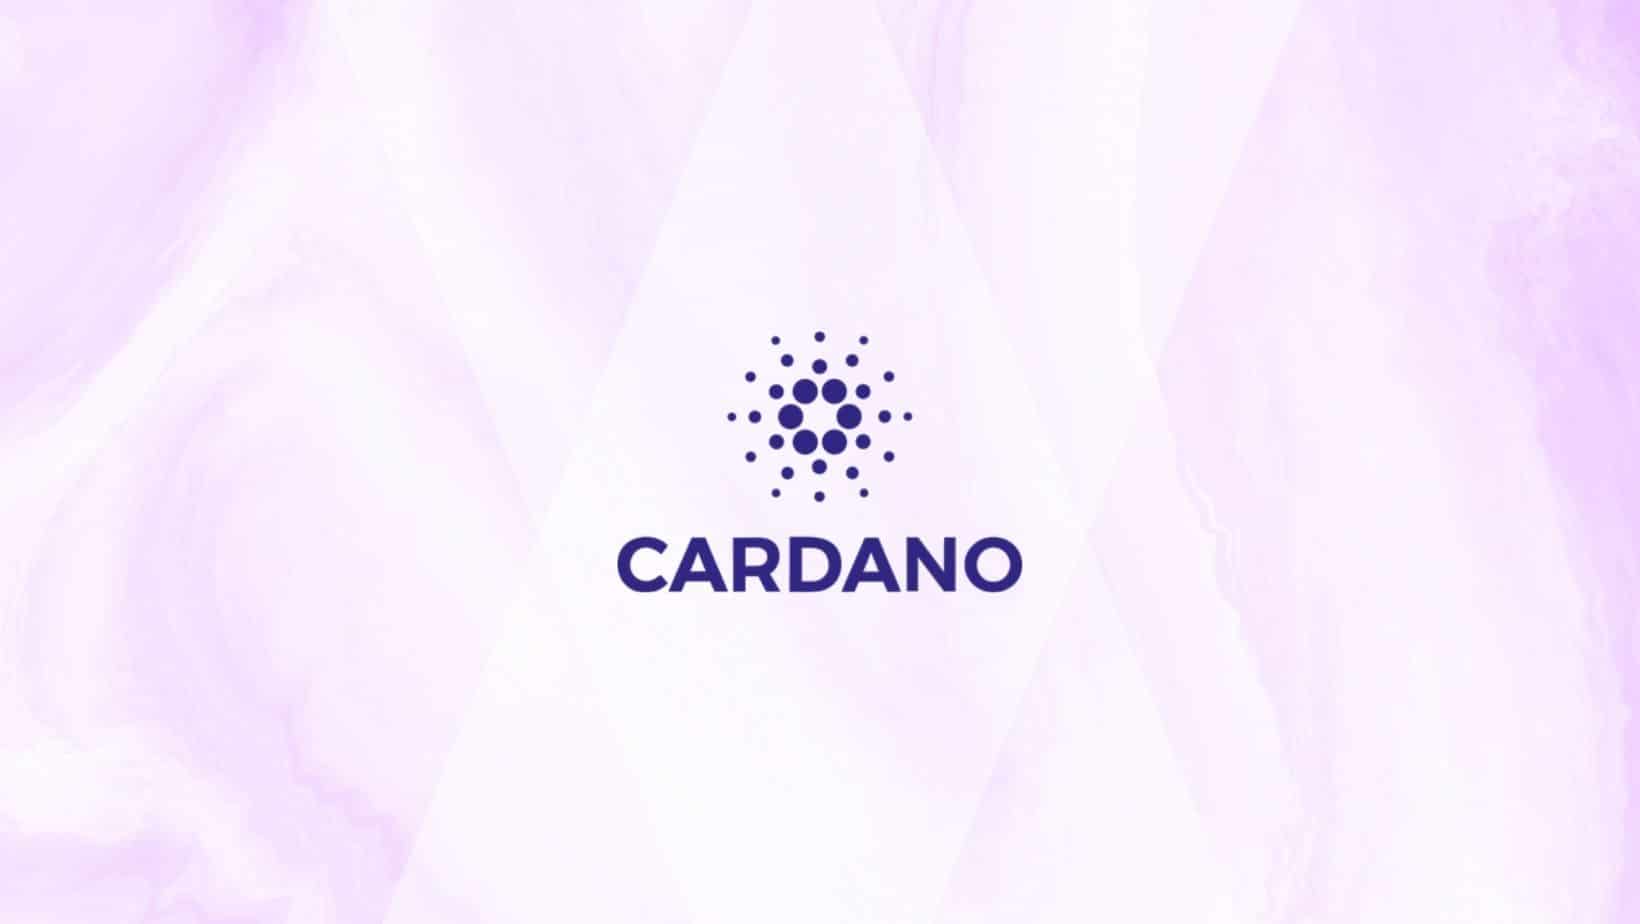 A Cardano, avagy ADA kriptovaluta részletes áttekintése